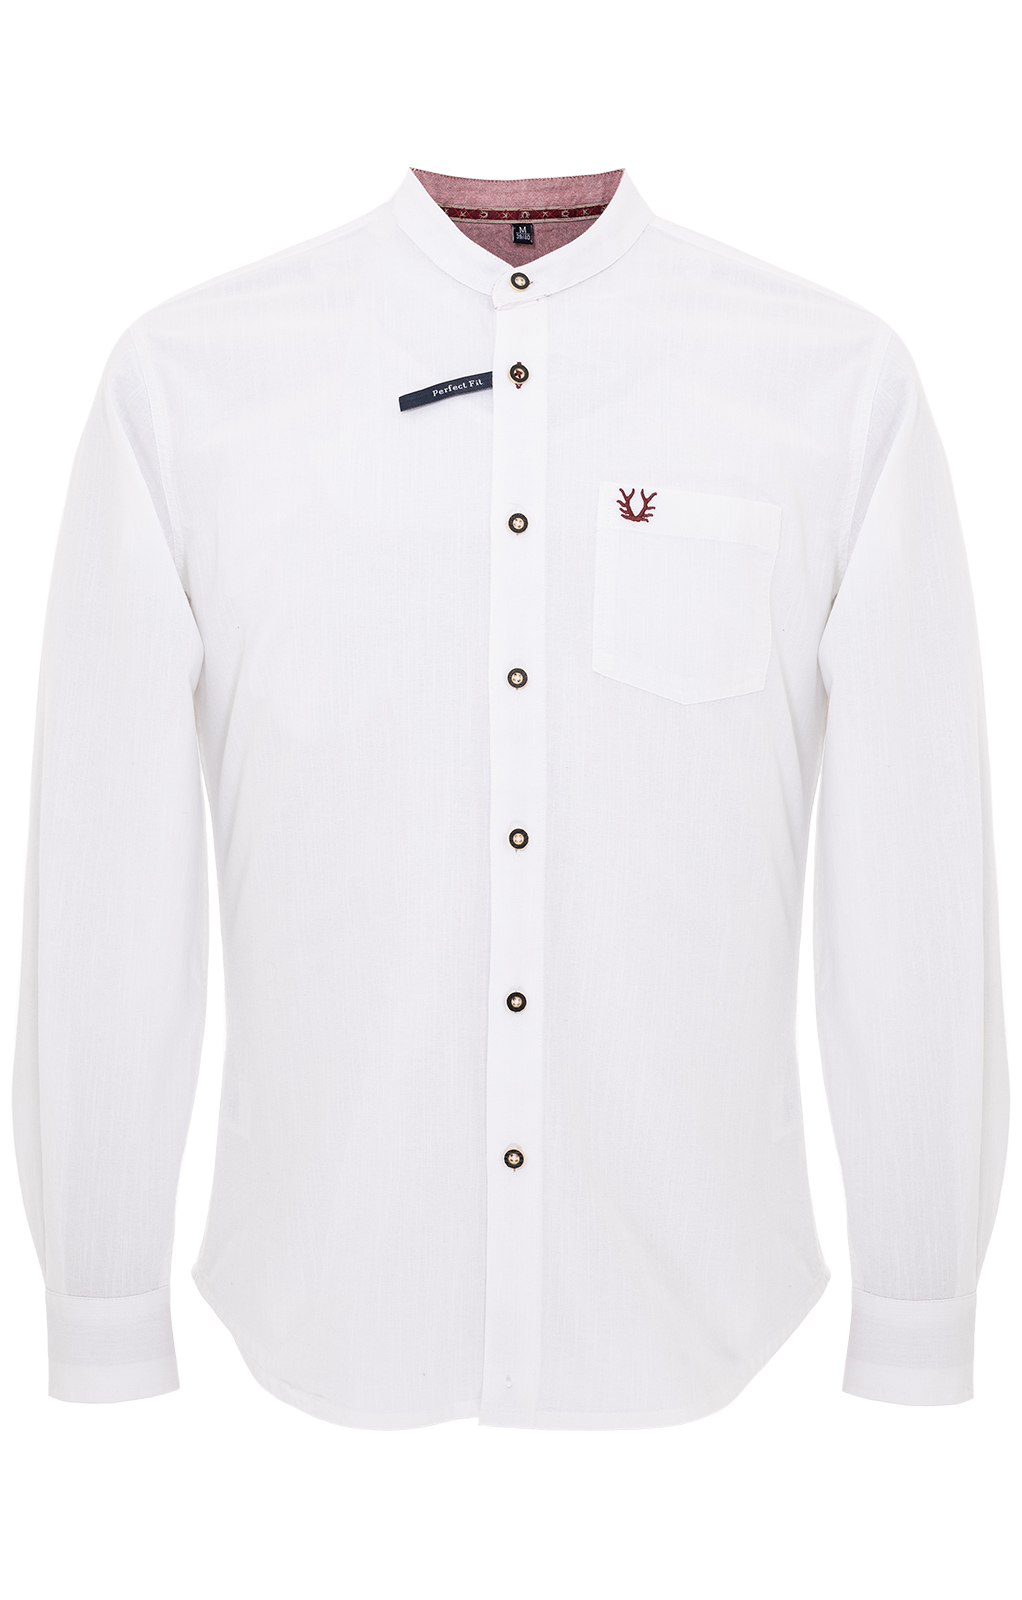 weitere Bilder von Camicie tradizionali CHARLES bianco rosso